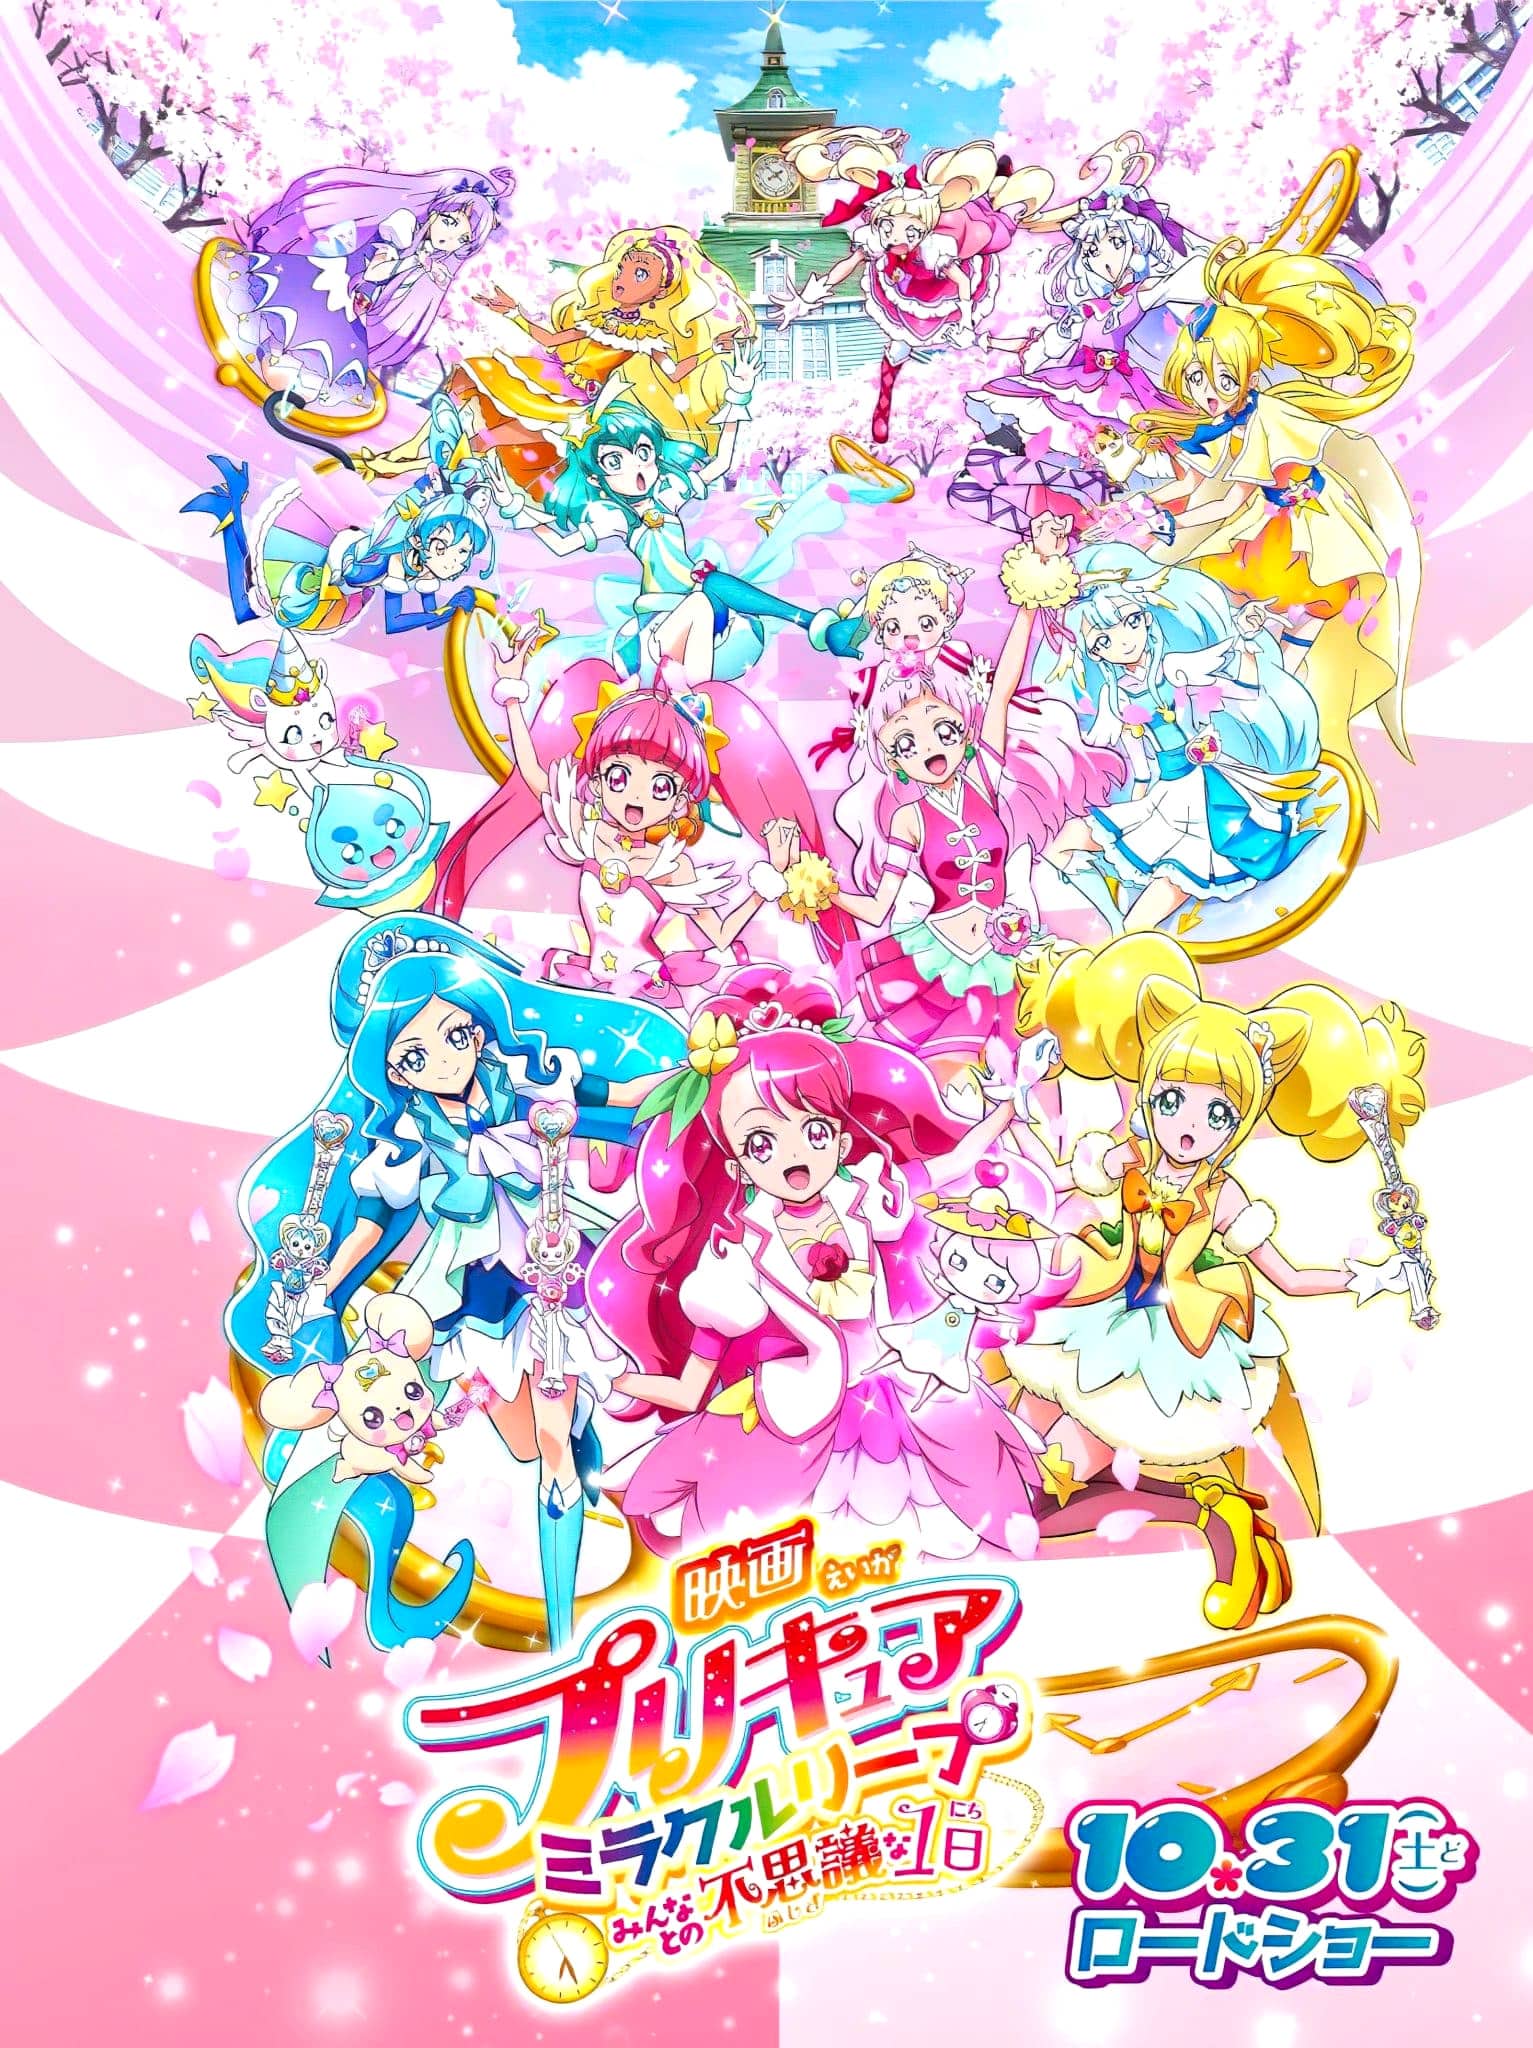 Annonce de Precure Miracle Leap parmi les animes automne 2020